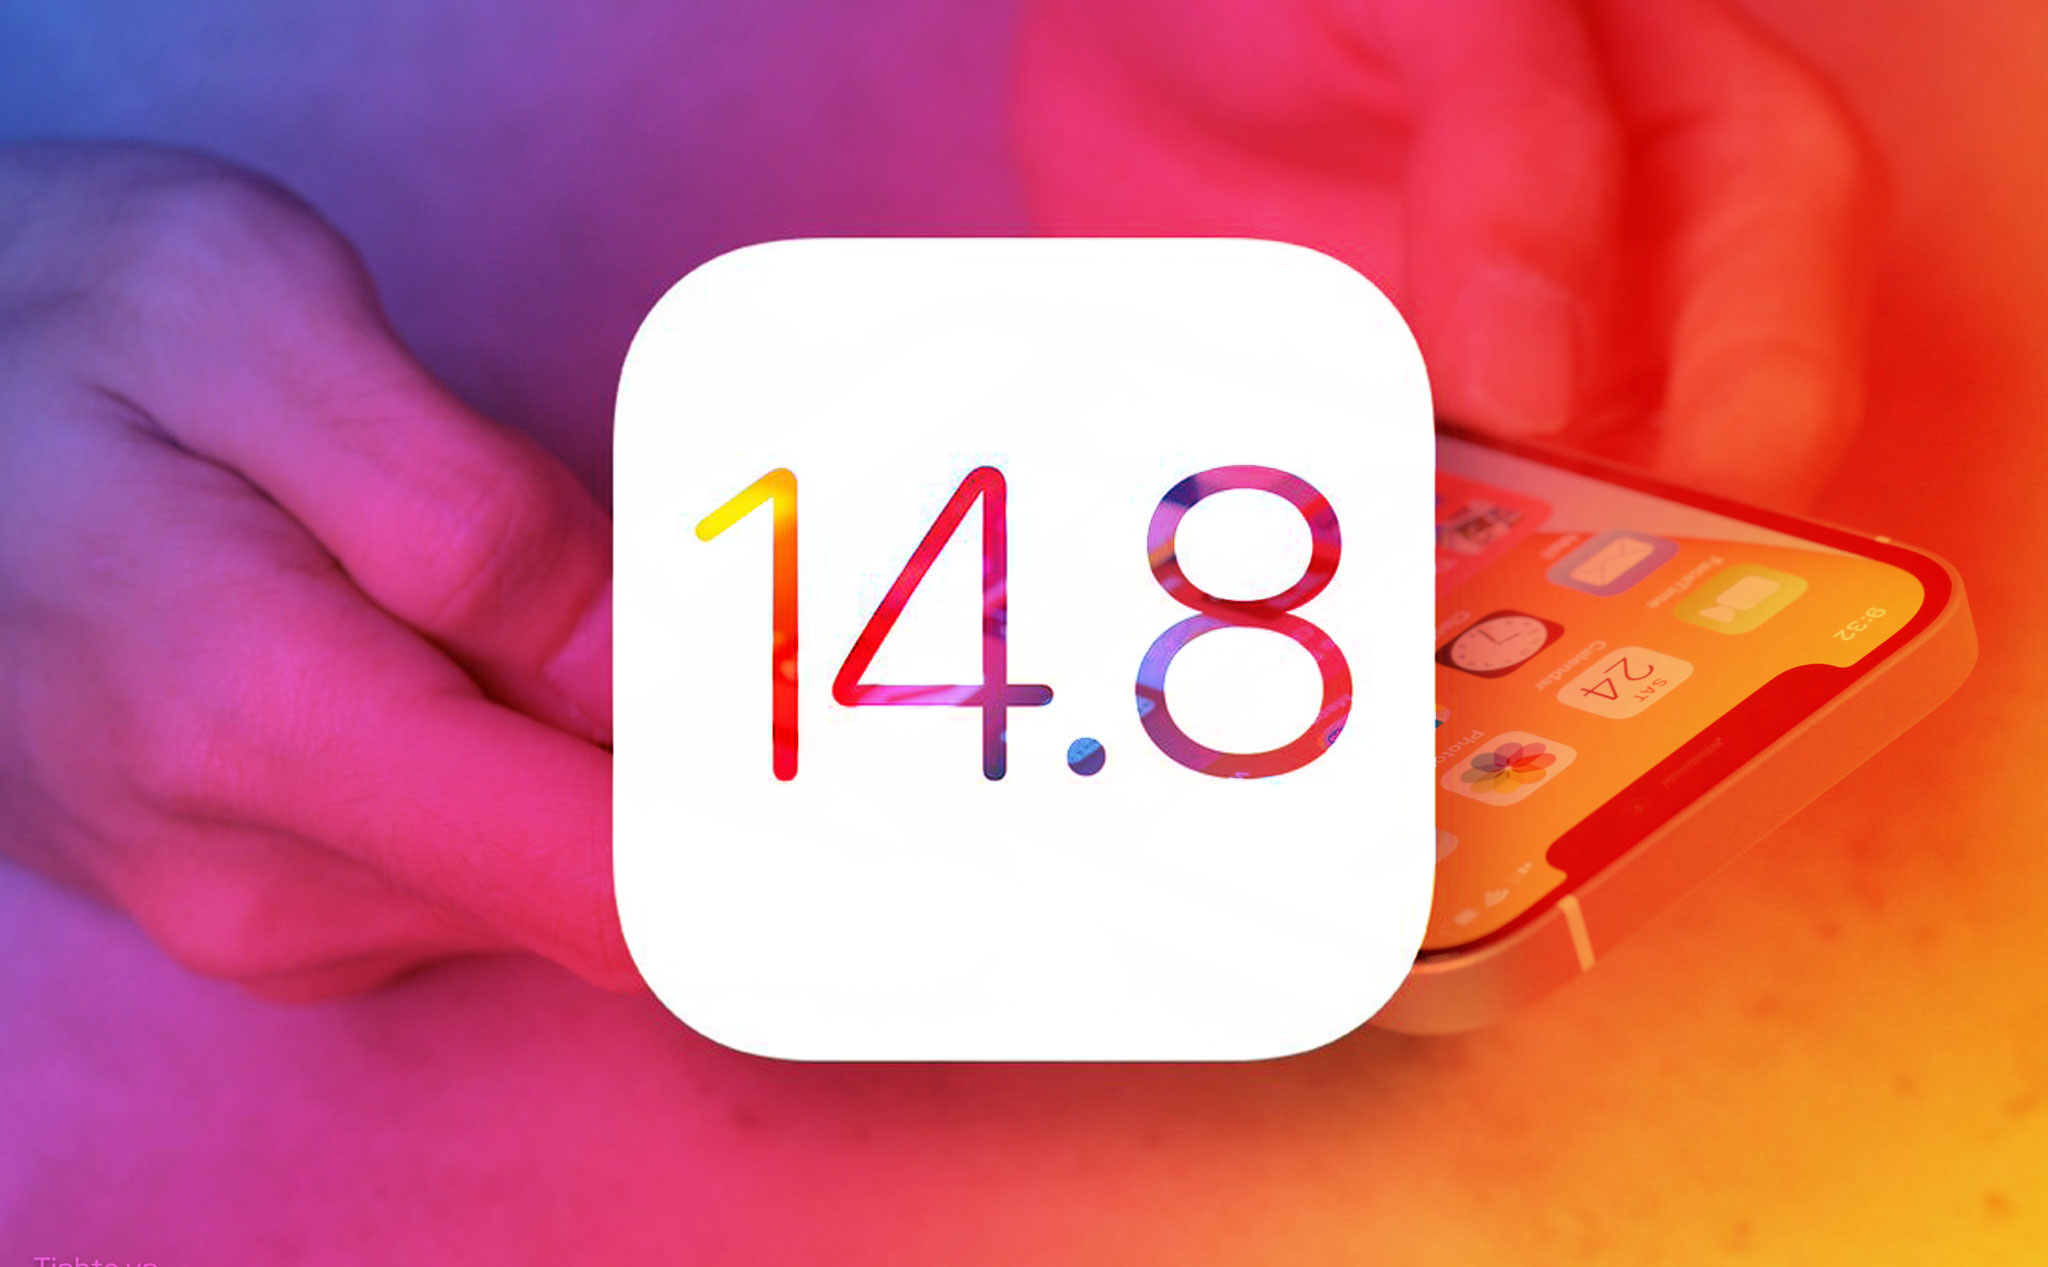 Apple khuyến cáo người dùng cập nhật hệ điều hành iOS 14.8 ngay lập tức, để tránh lỗ hổng bảo mật nghiêm trọng